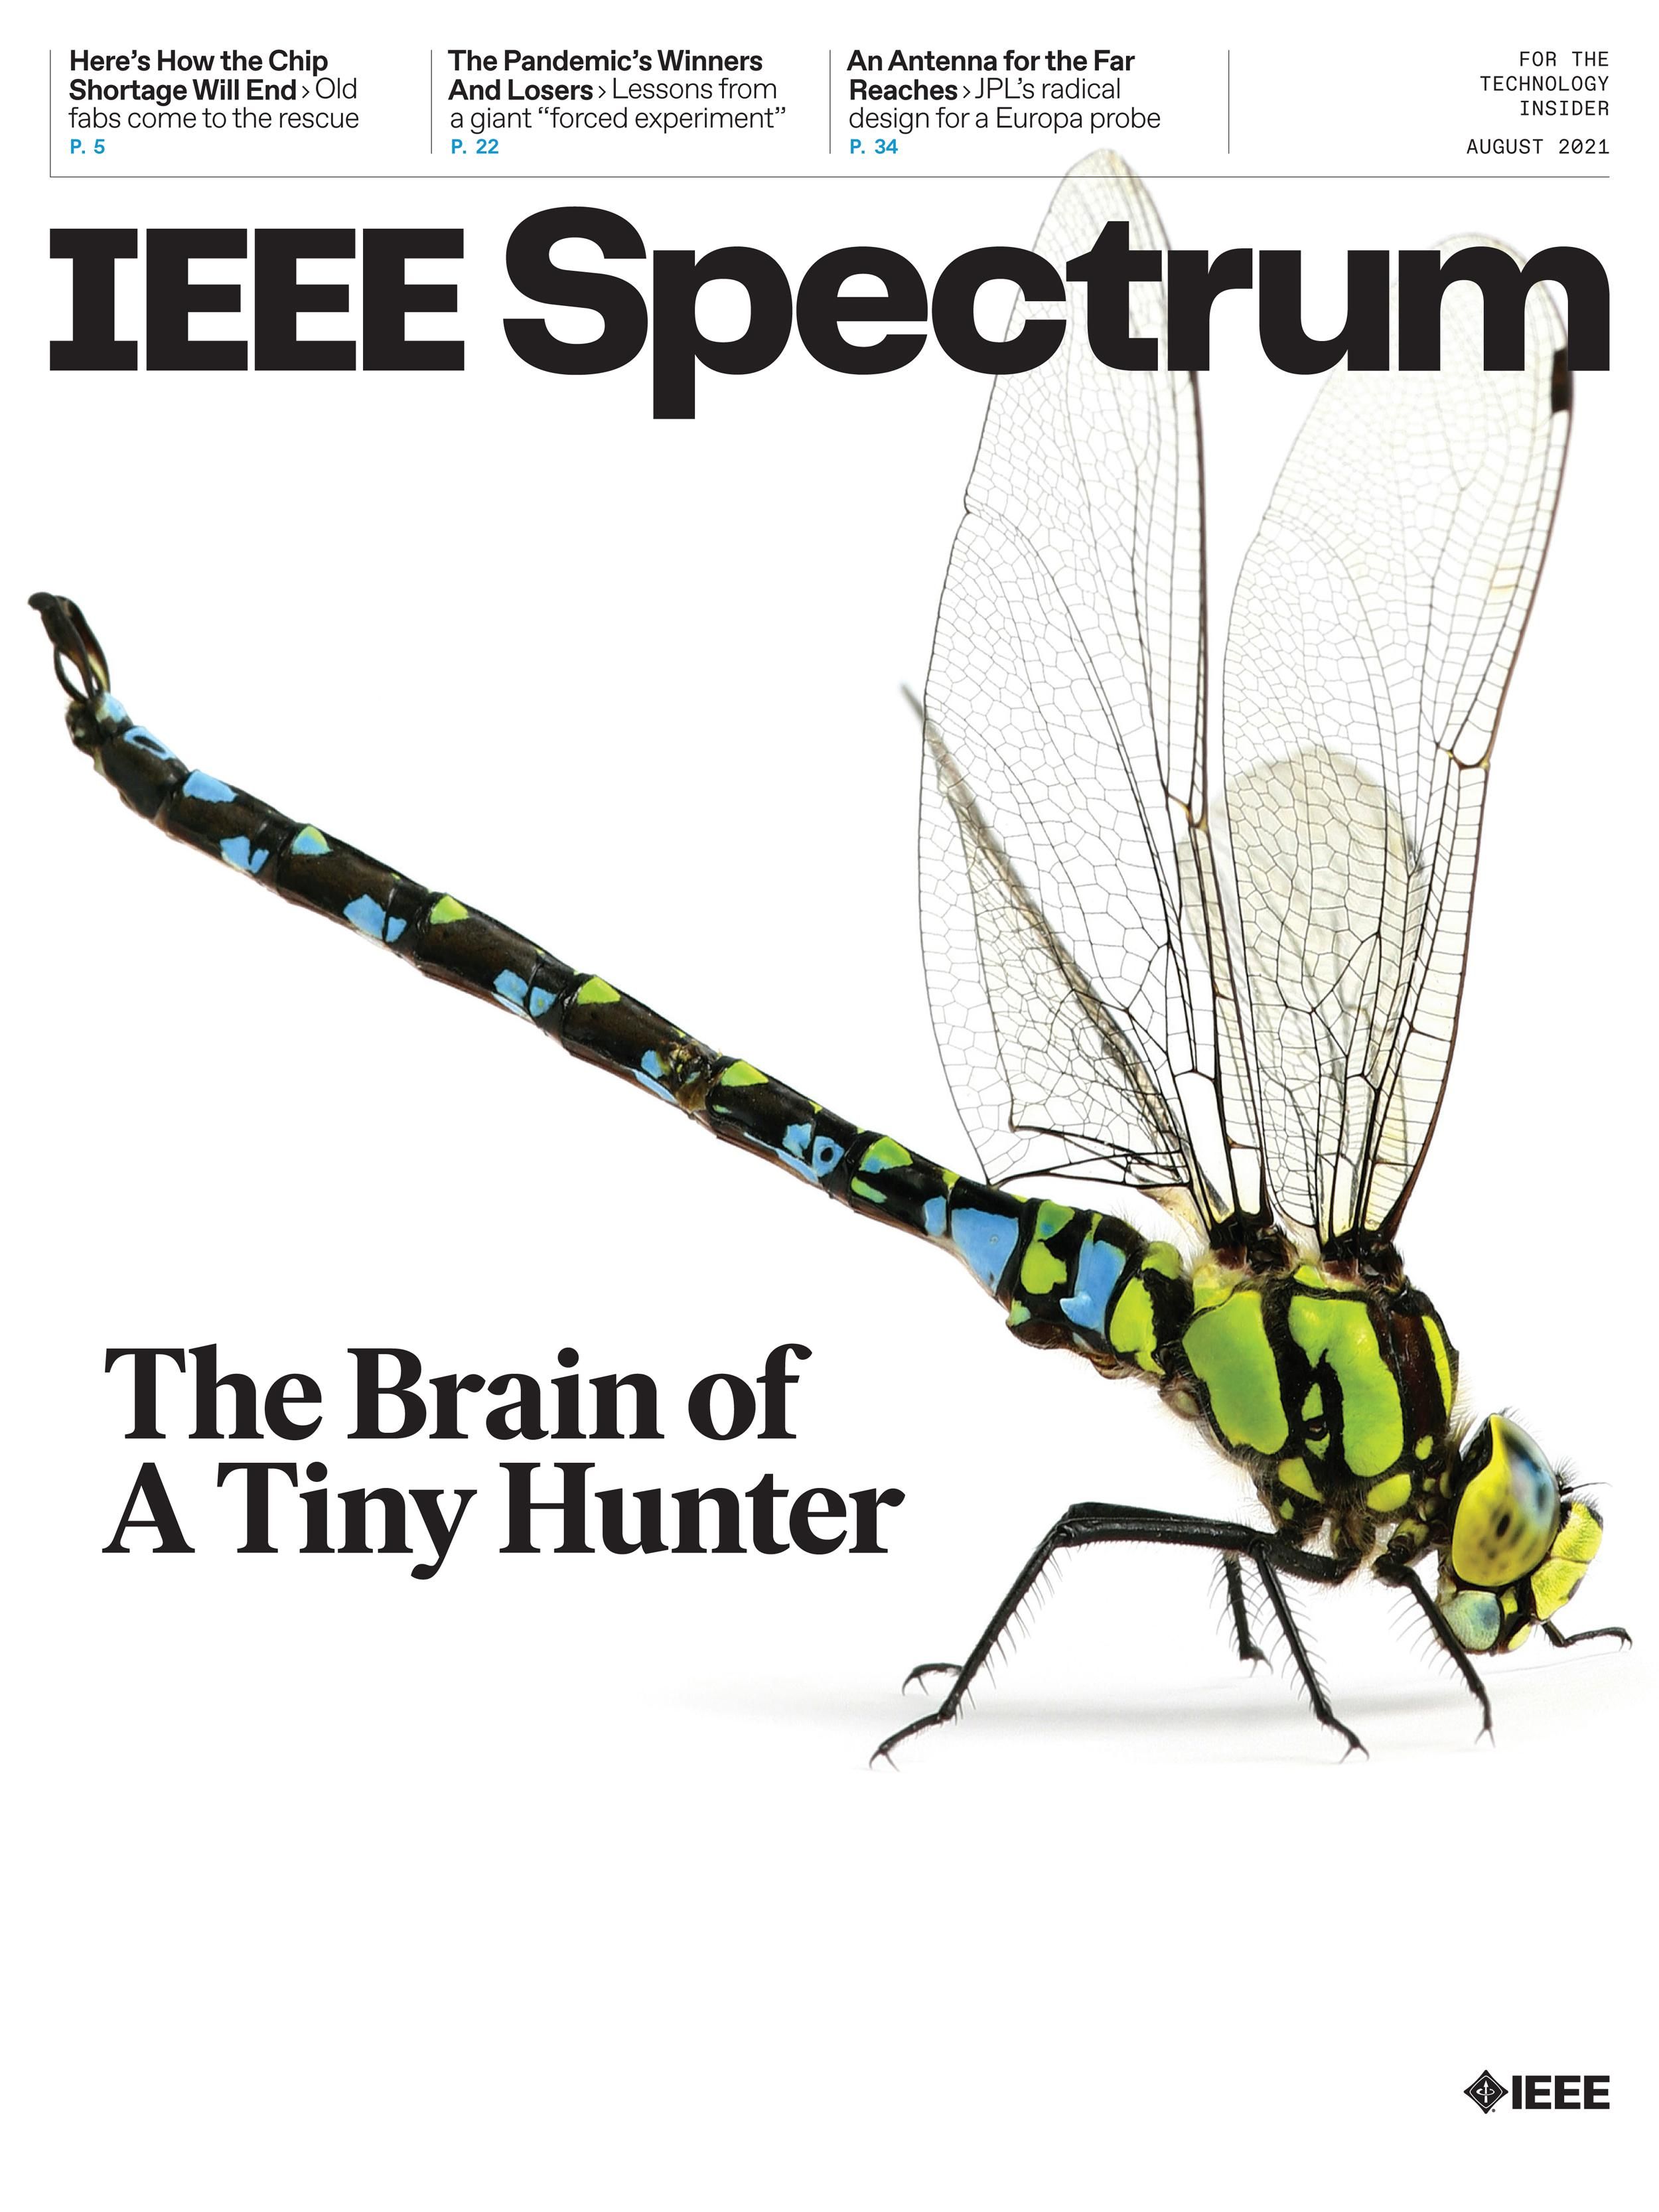 IEEE spectrum 2021 August